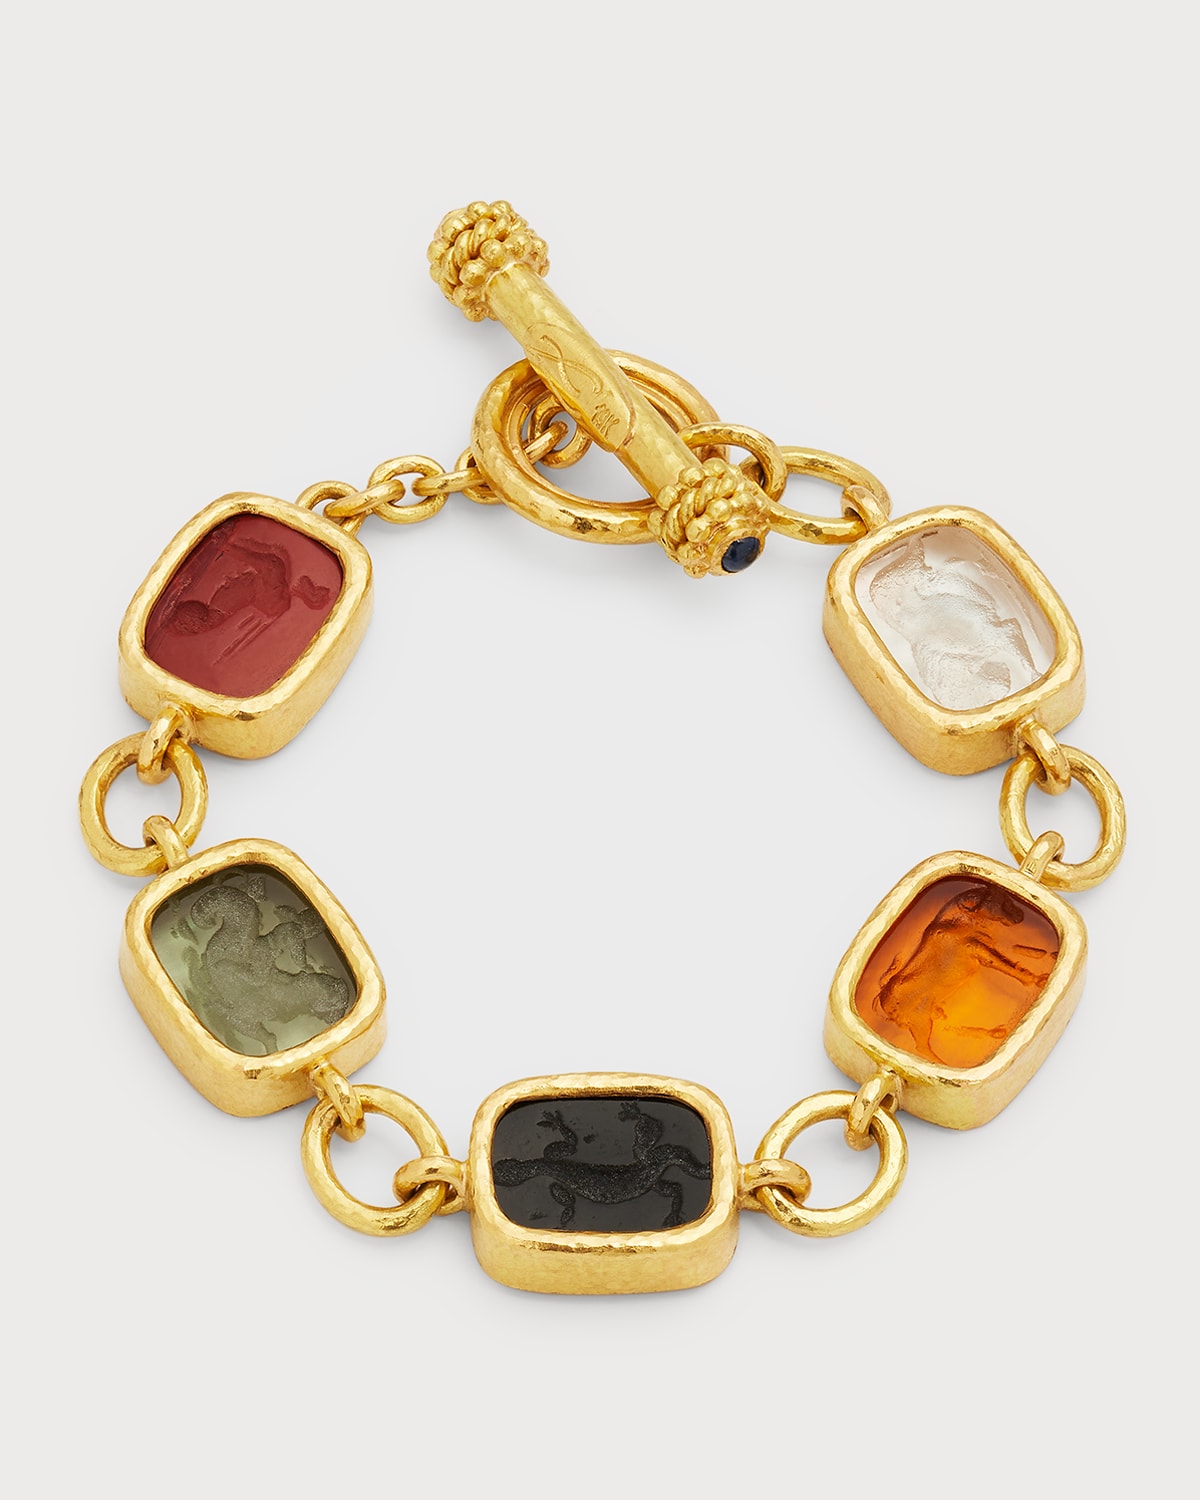 Antiqued Animal Intaglio 19k Gold Toggle Bracelet